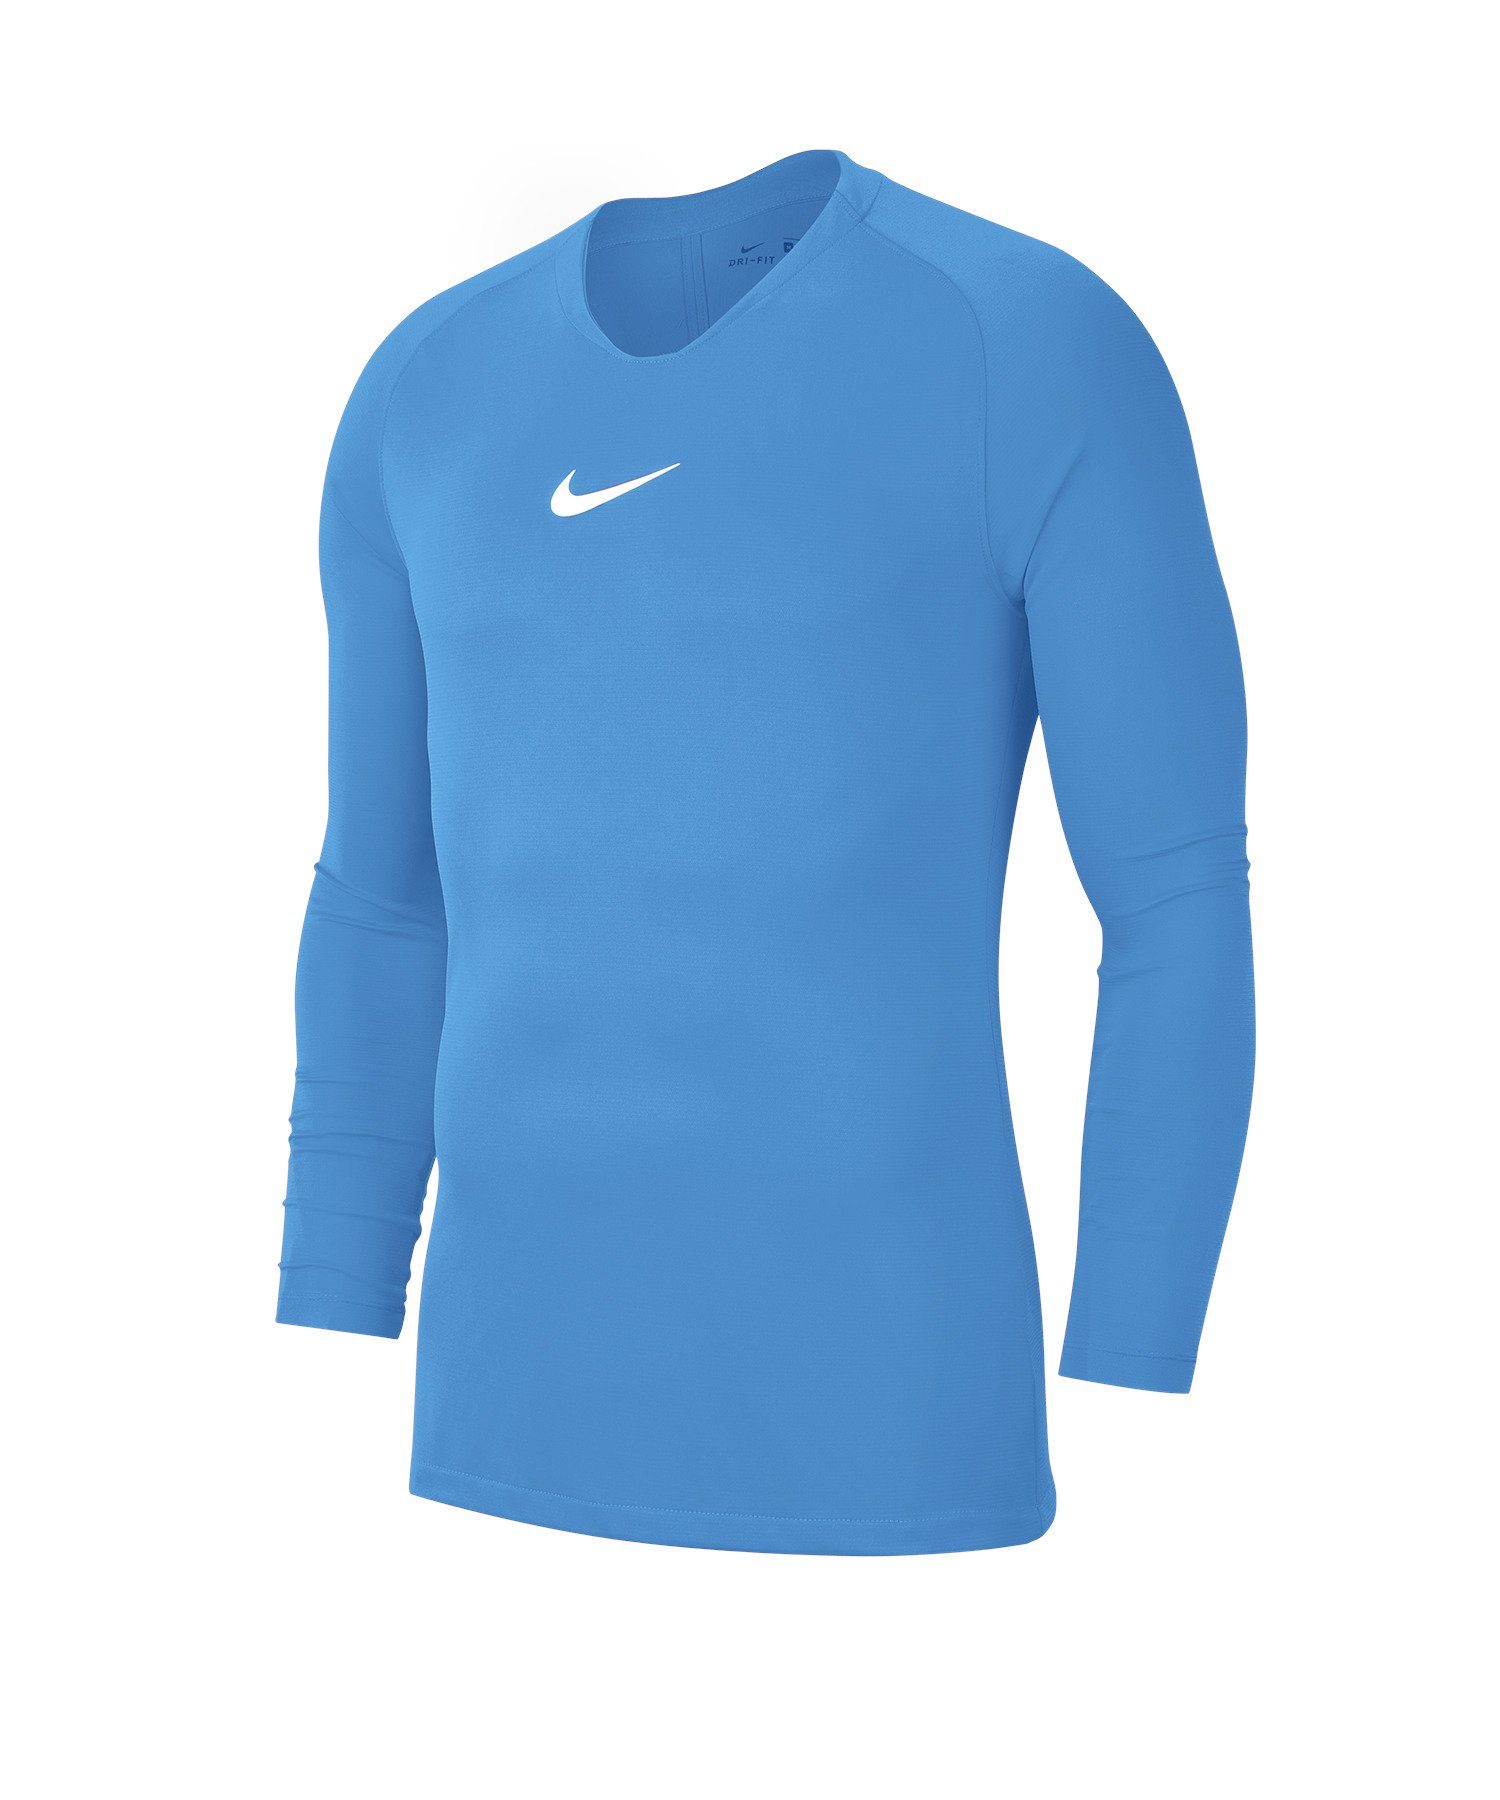 Park Nike Layer First Kids Top Daumenöffnung blau Funktionsshirt